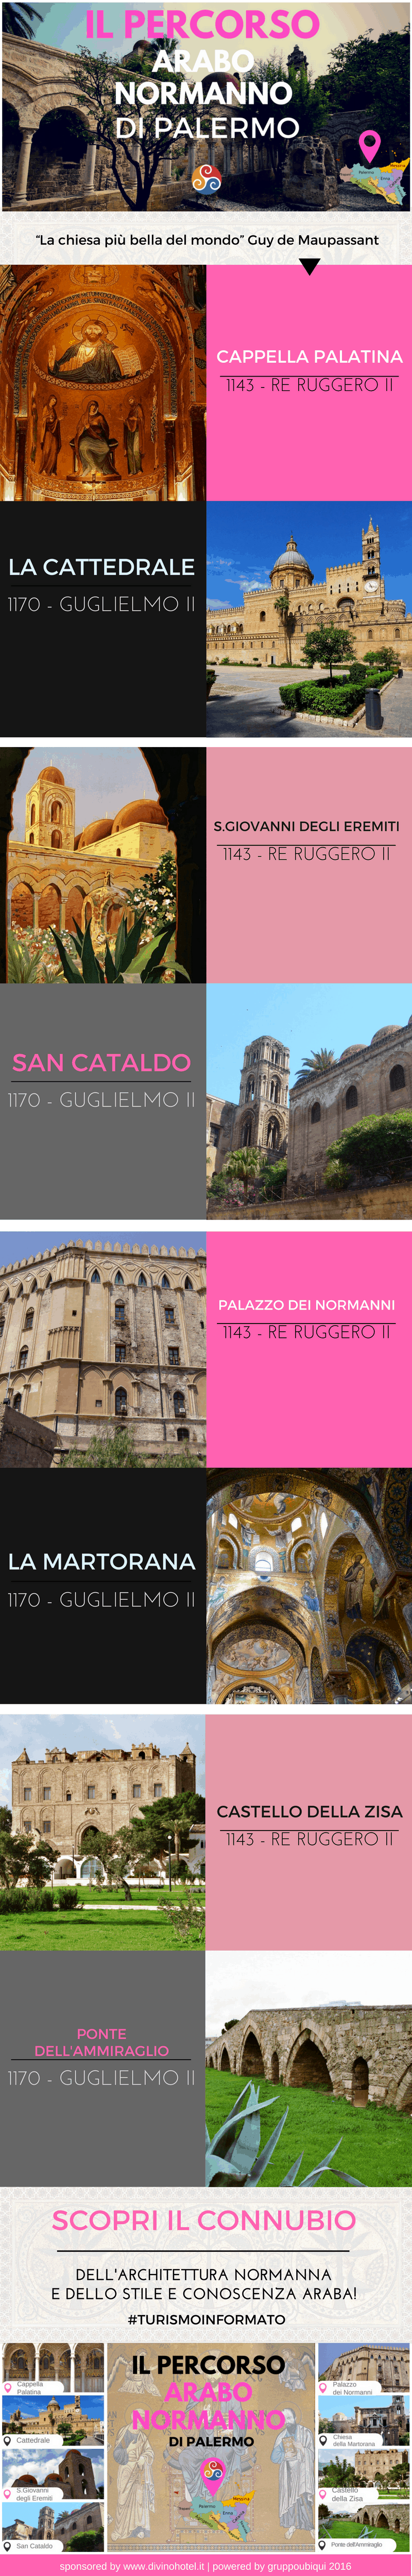 Questa infografica mostra le foto e le immagini di tutti i monumenti inseriti nell'articolo Itinerario unesco arabo normanno di Palermo.